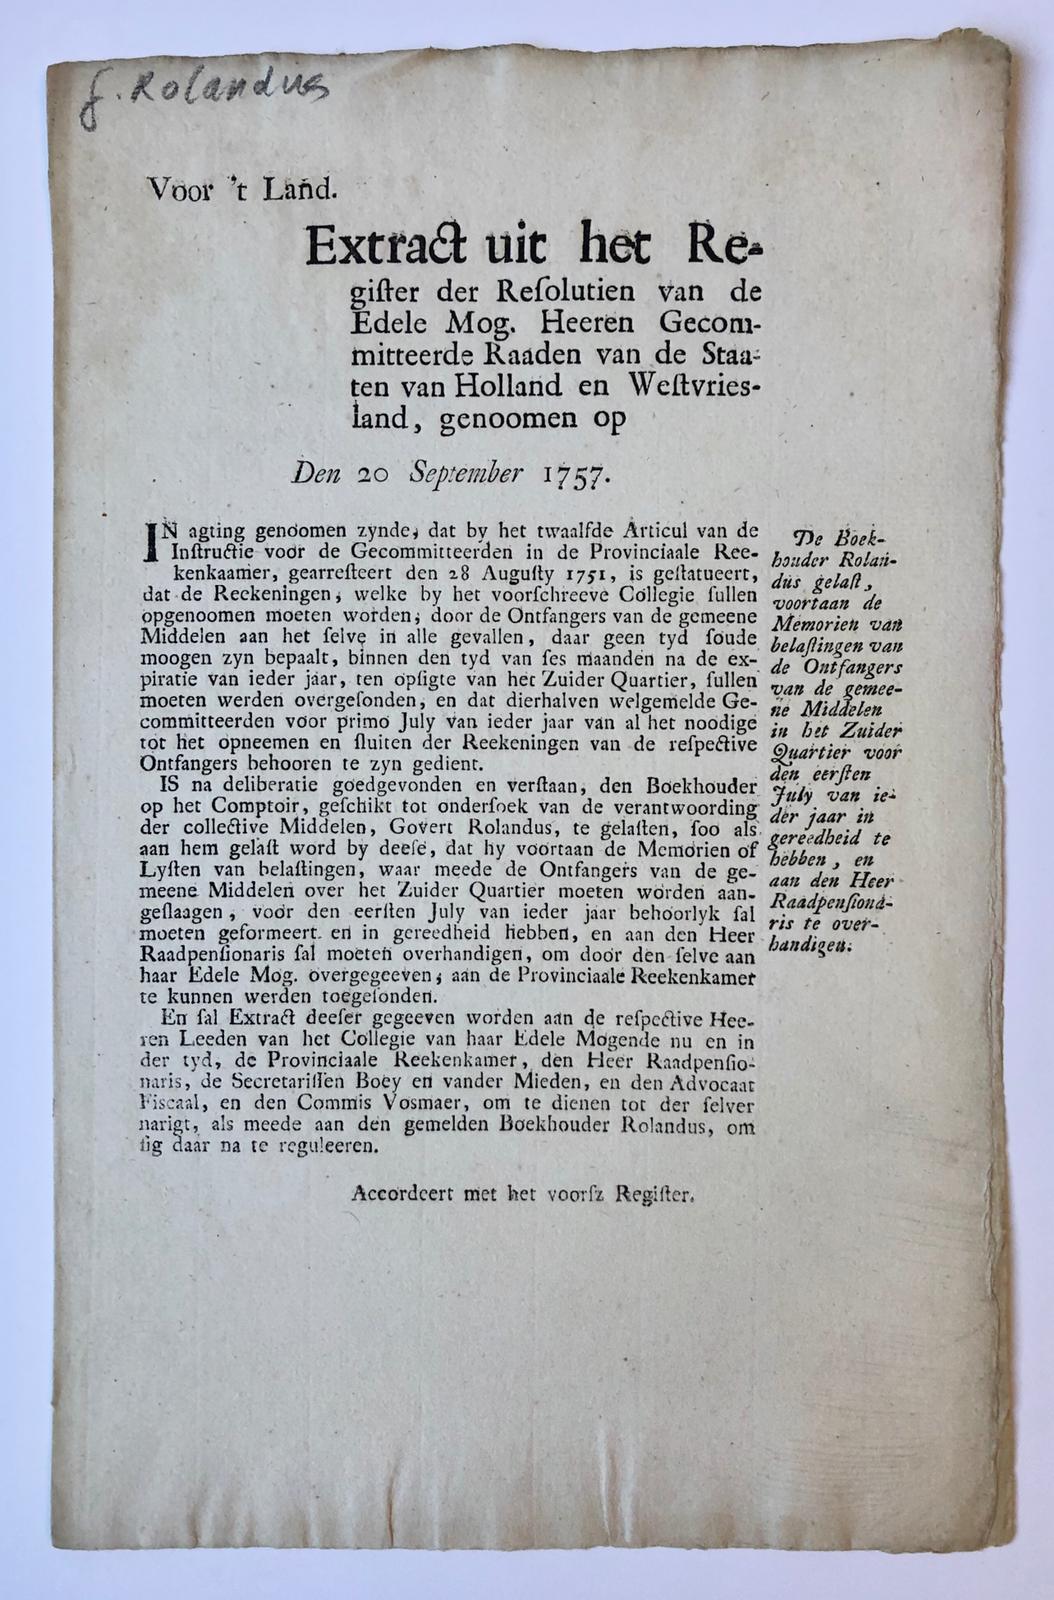  - [PRINTED PUBLICATION, 1757, ACCOUNTANCY] Extract uit resolutin Staten van Holland 20-9-1757 betr. instructie voor de boekhouder Rolandus, 1 pag. folio, gedrukt.